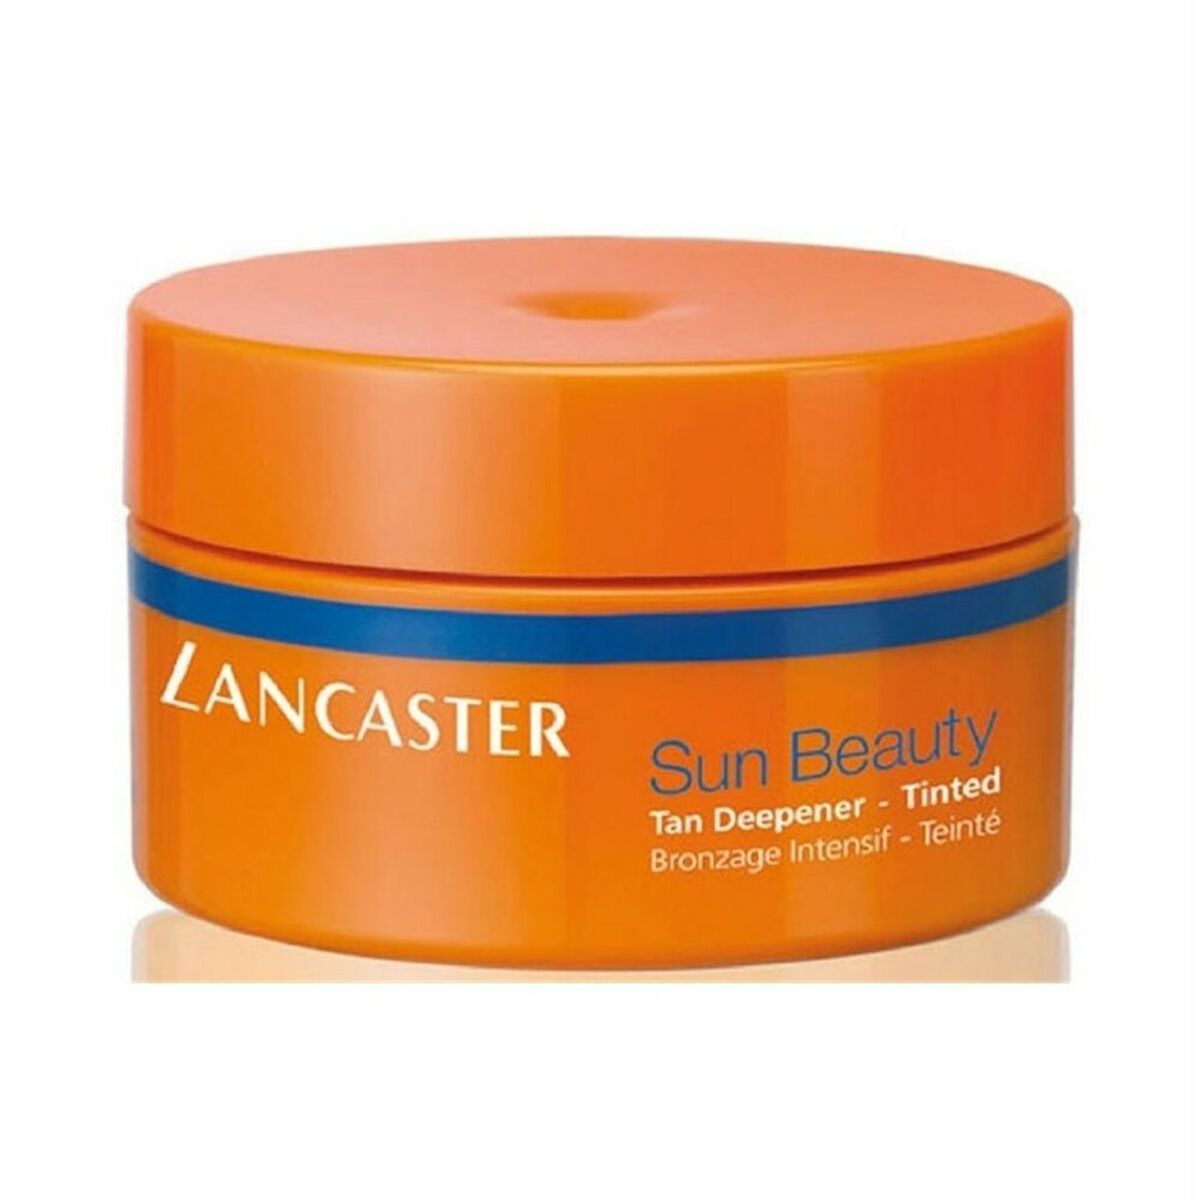 Intensificator bronz Sun Beauty Lancaster KT60030 200 ml